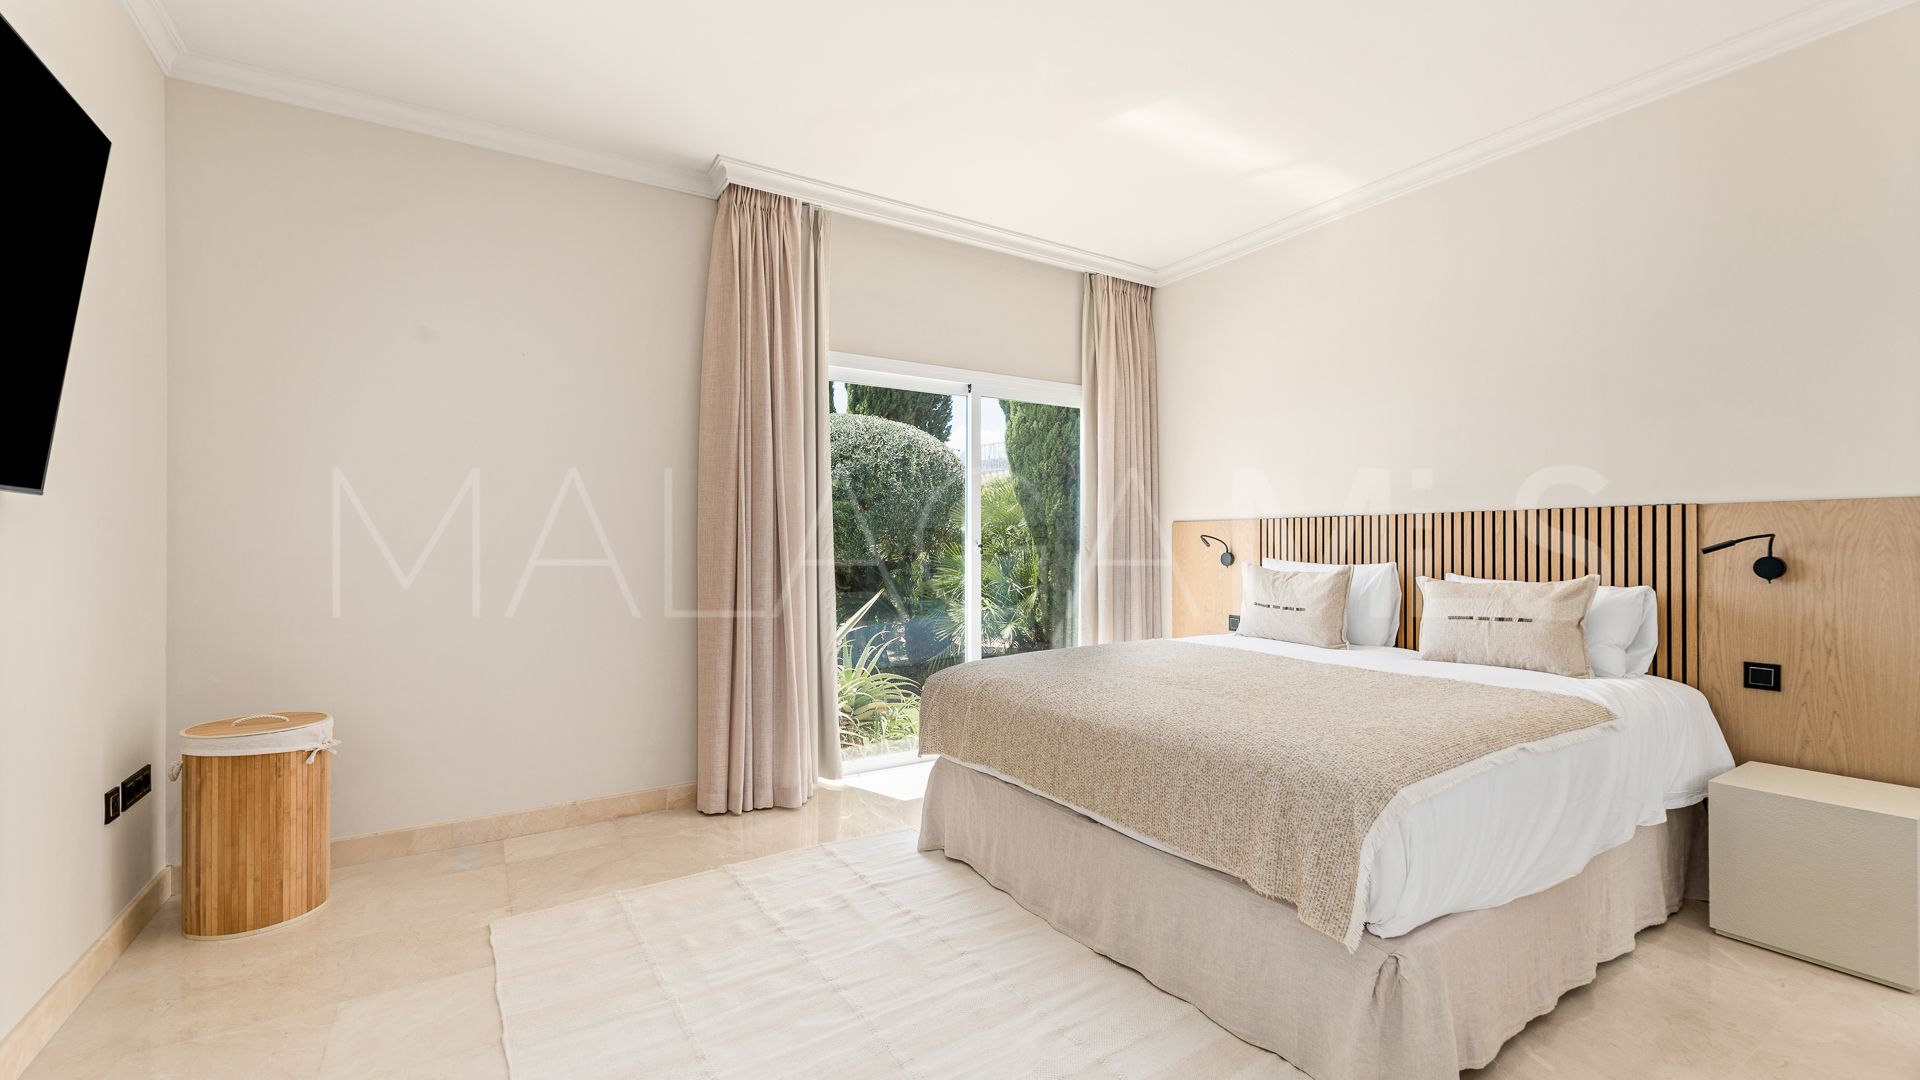 Buy villa with 4 bedrooms in Los Flamingos Golf